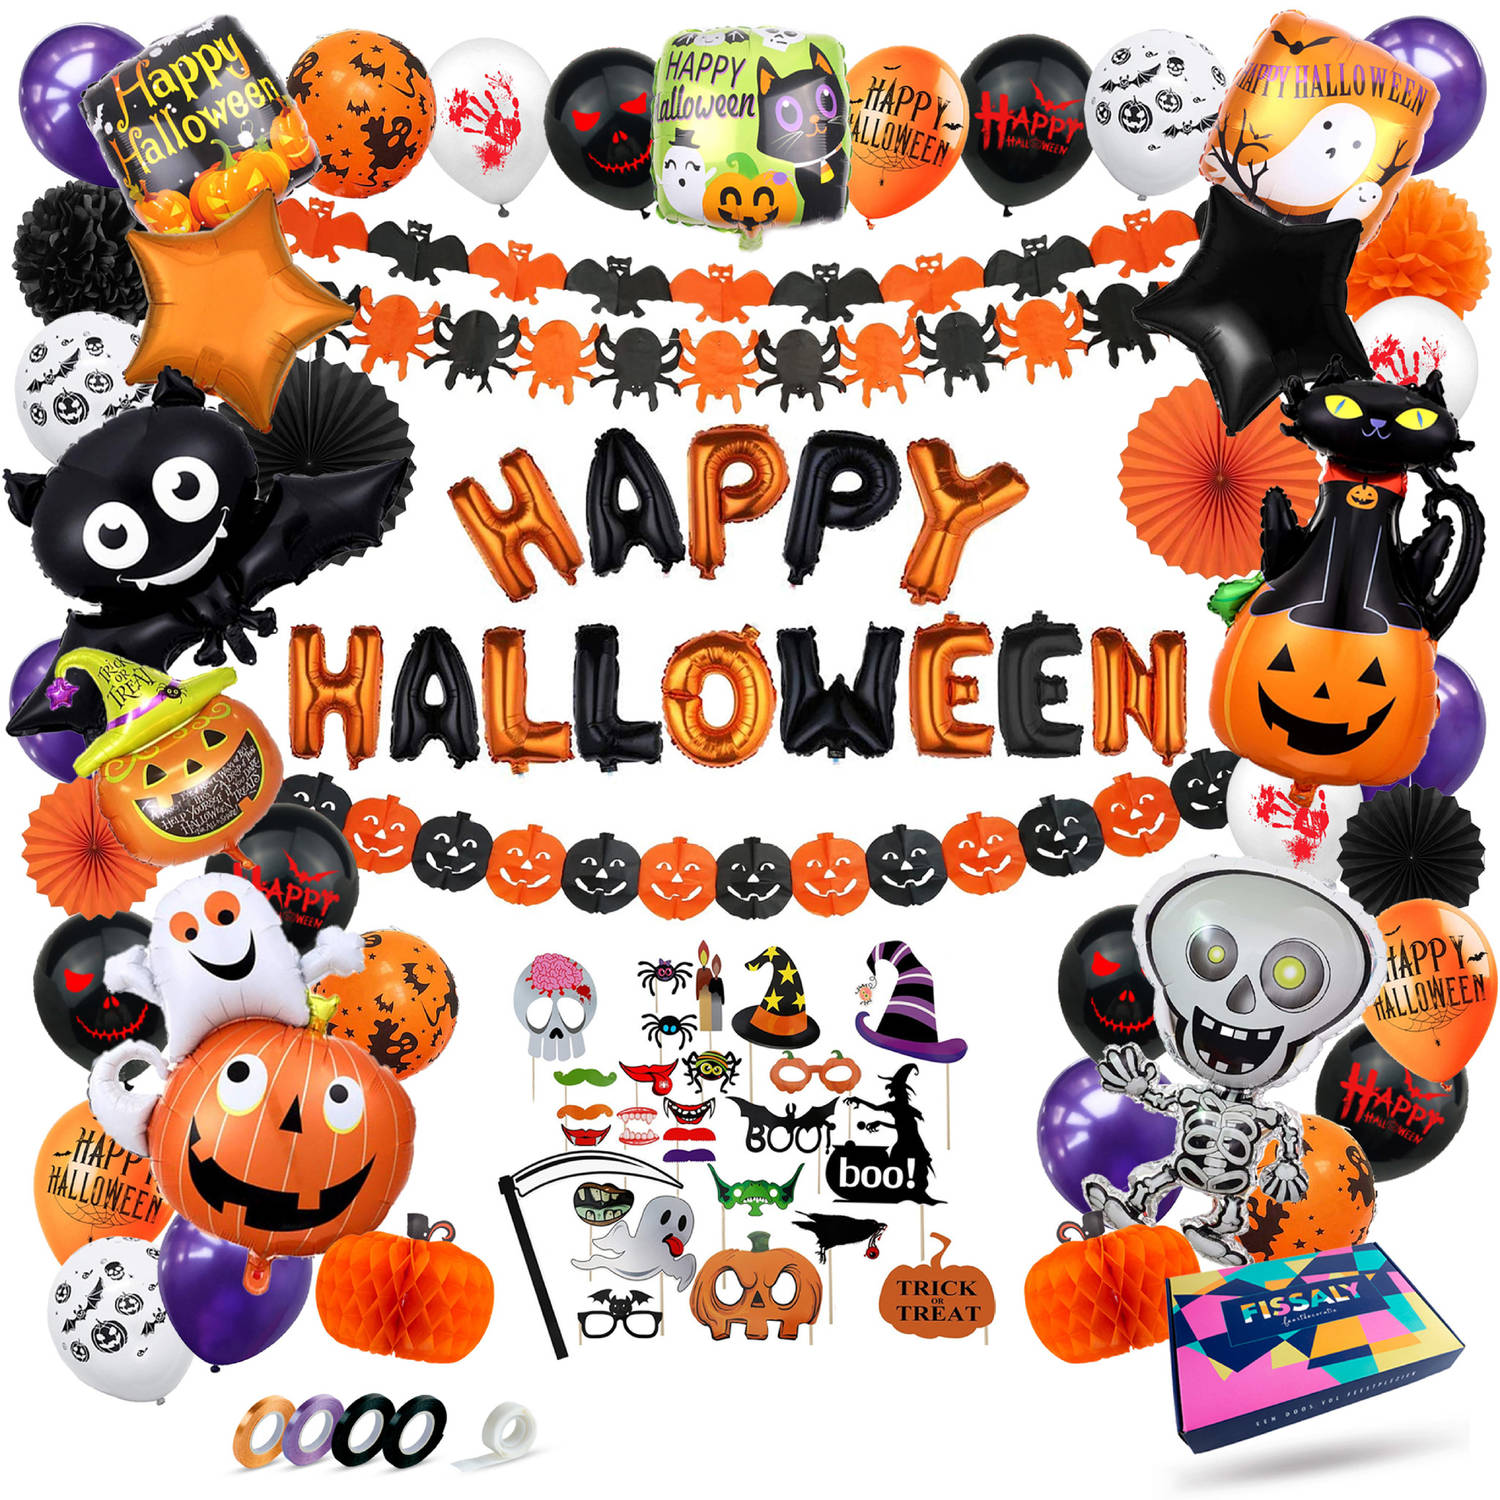 Fissaly® 89 Stuks Halloween Decoratie Set – Griezelige Feest Versiering met Slingers & Ballonnen – Accessoires voor Themafeest- Feestversiering met vleermuis, spook, skelet, pompoe